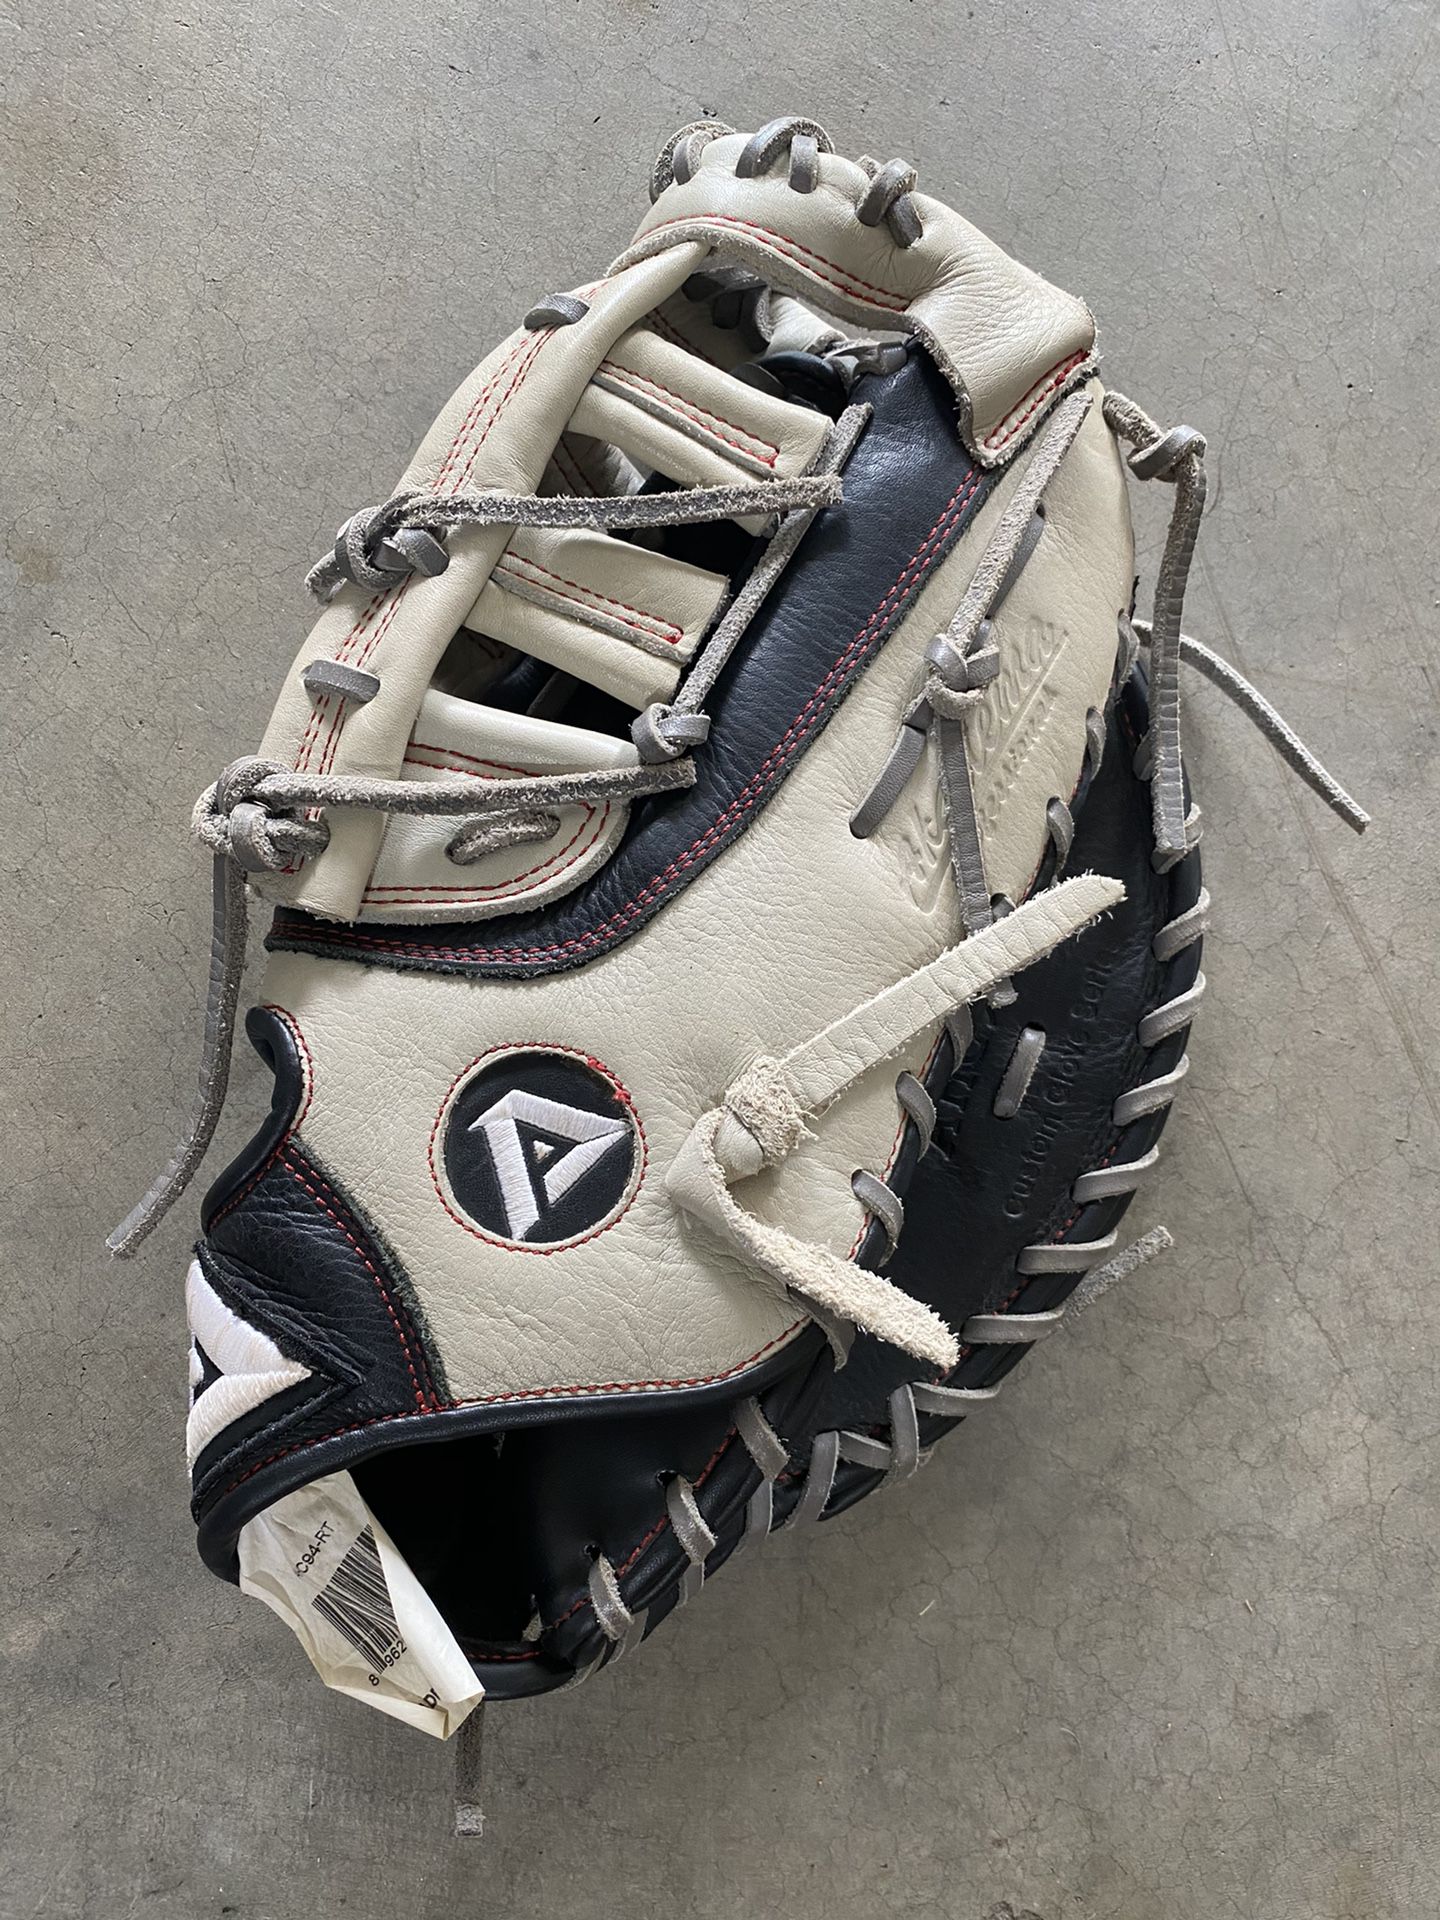 Akadema 11.5” First baseman’s baseball glove